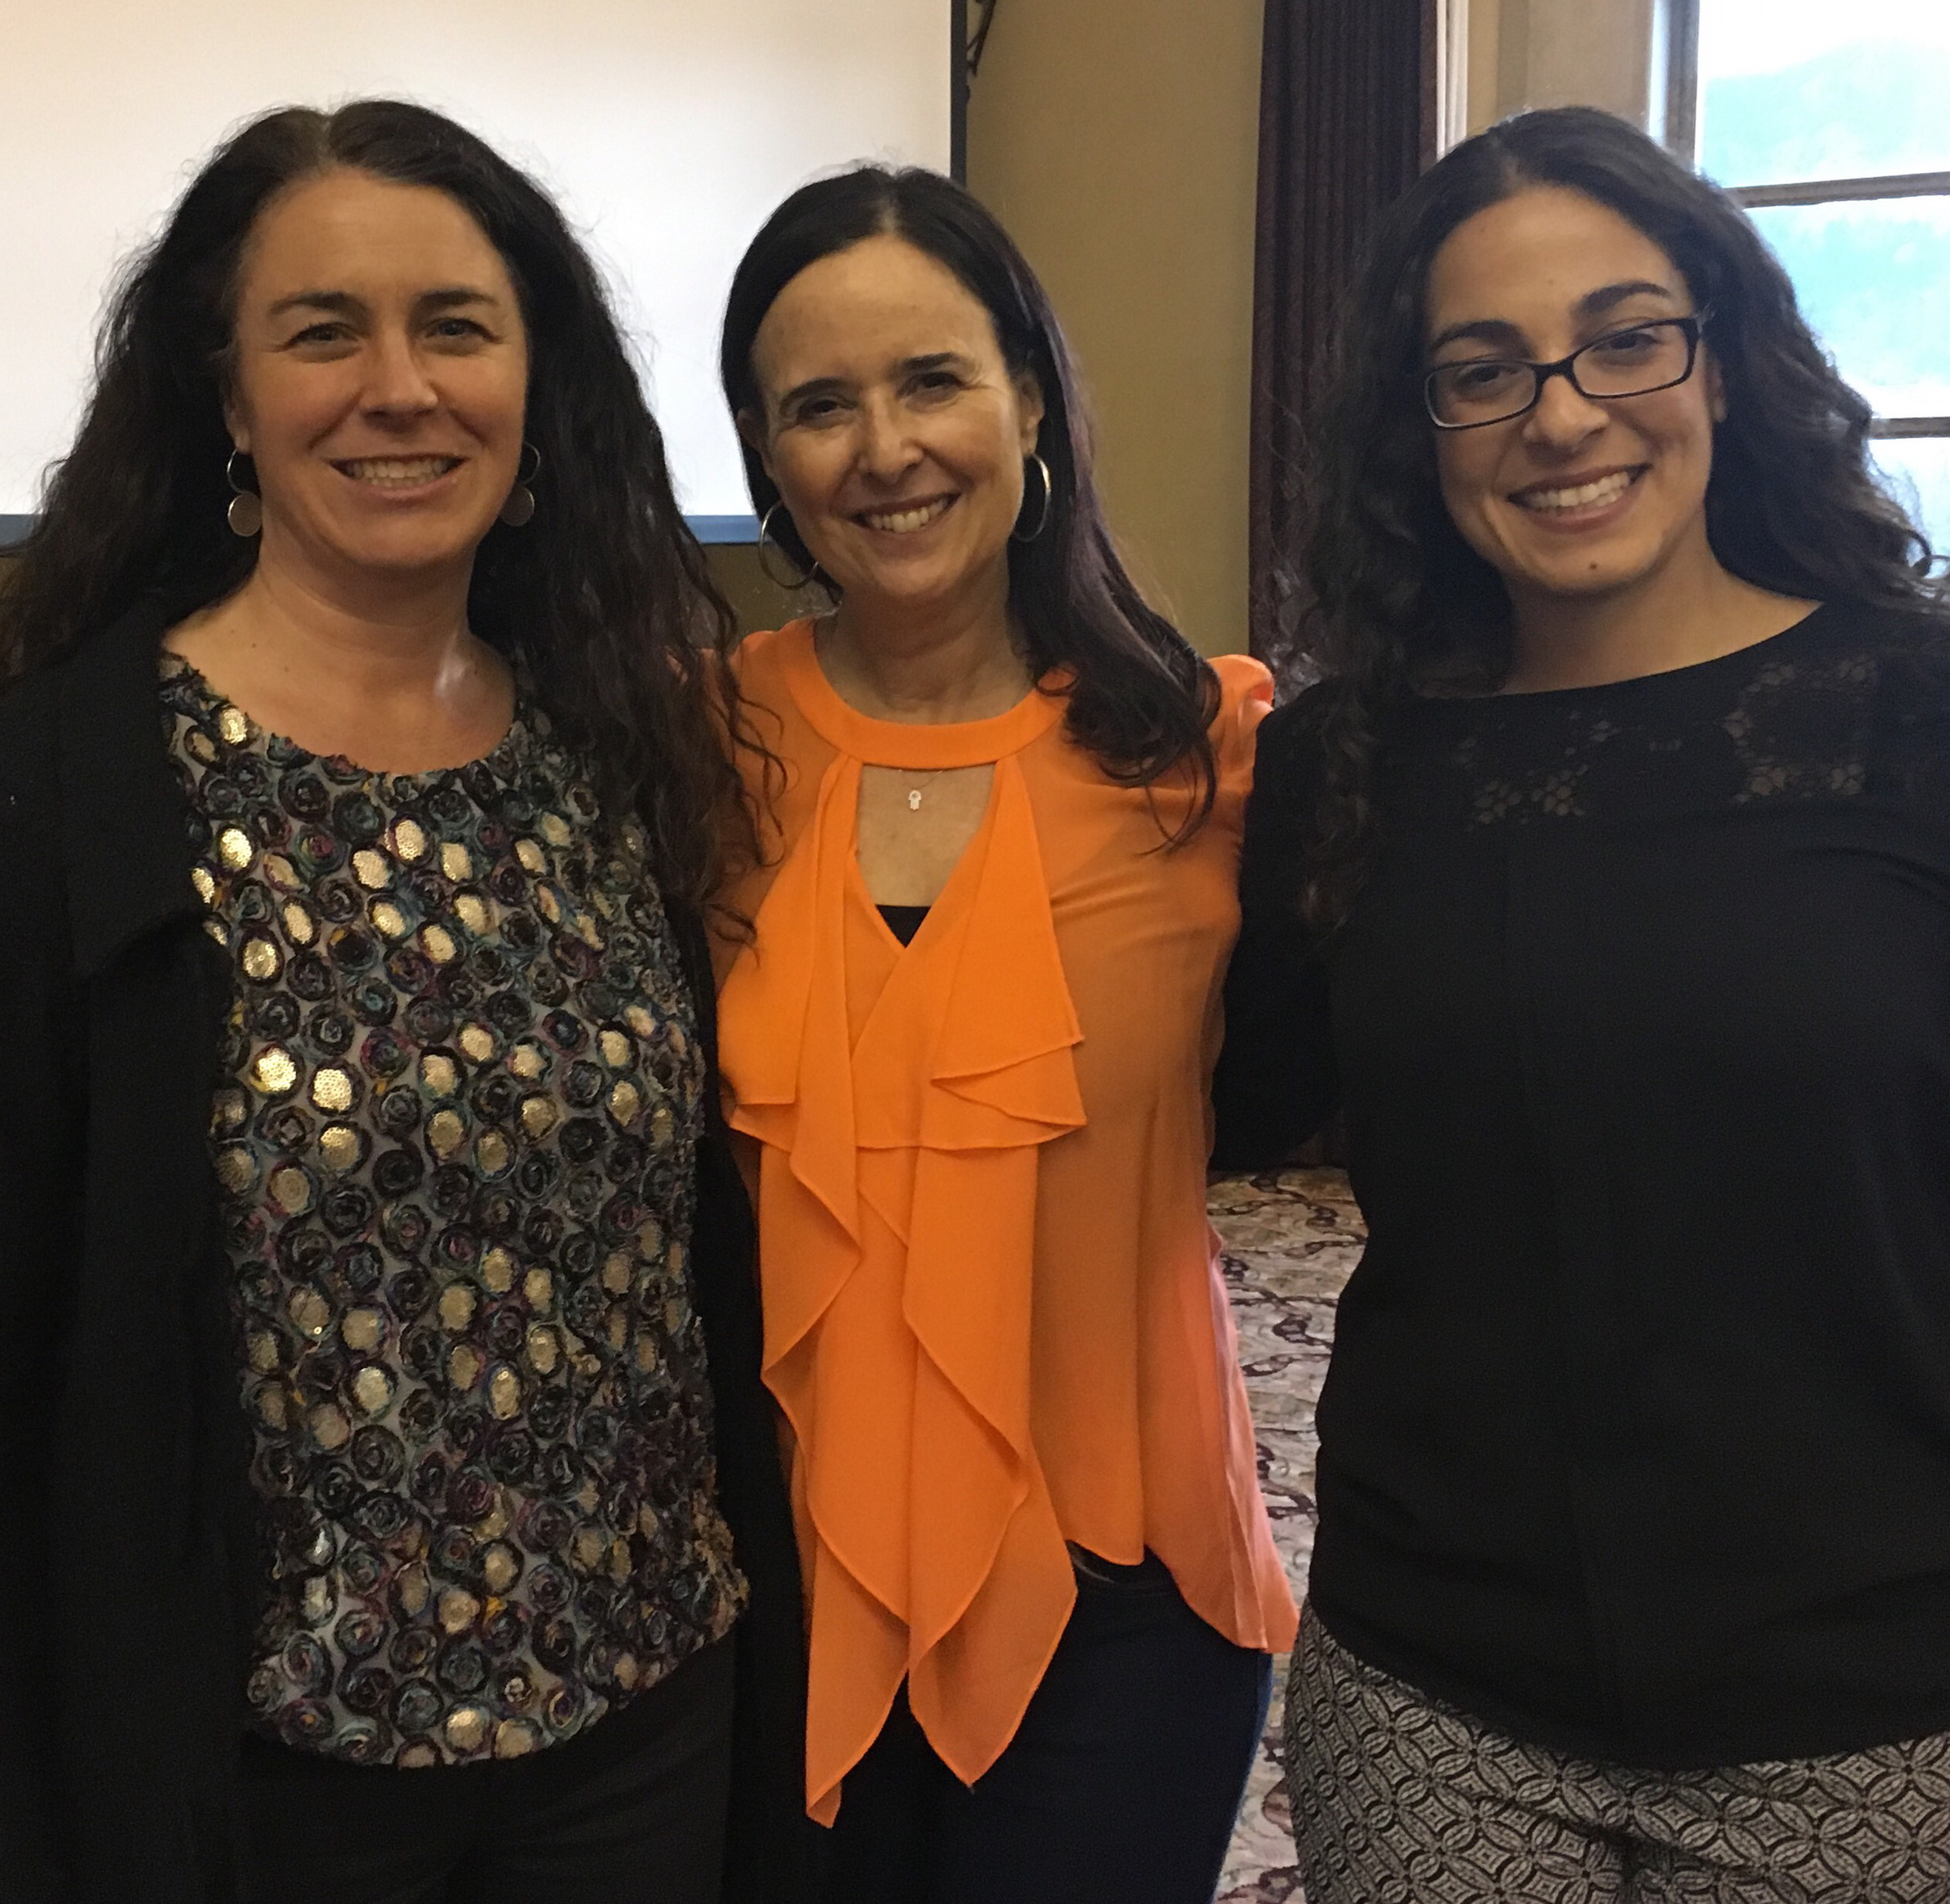 Carole McGranahan, Ruth Behar, and Lara Stein Pardo at Behar's talk, "Between Two Cubas," April 6, 2016